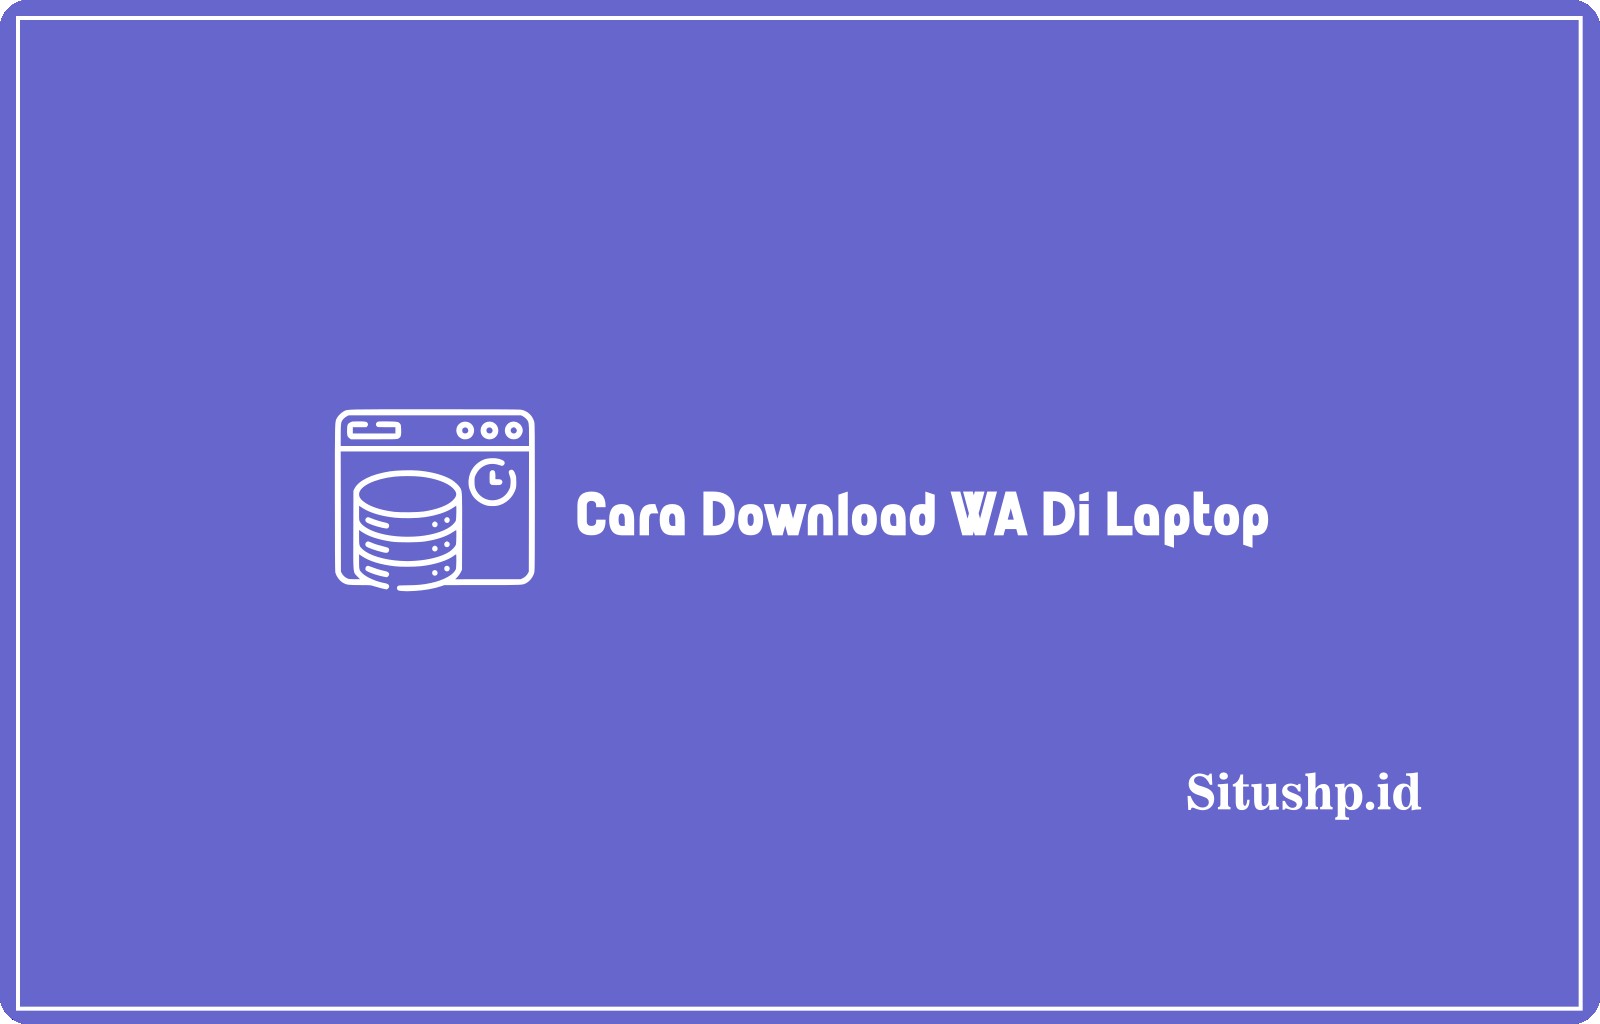 Cara Download WA Di Laptop